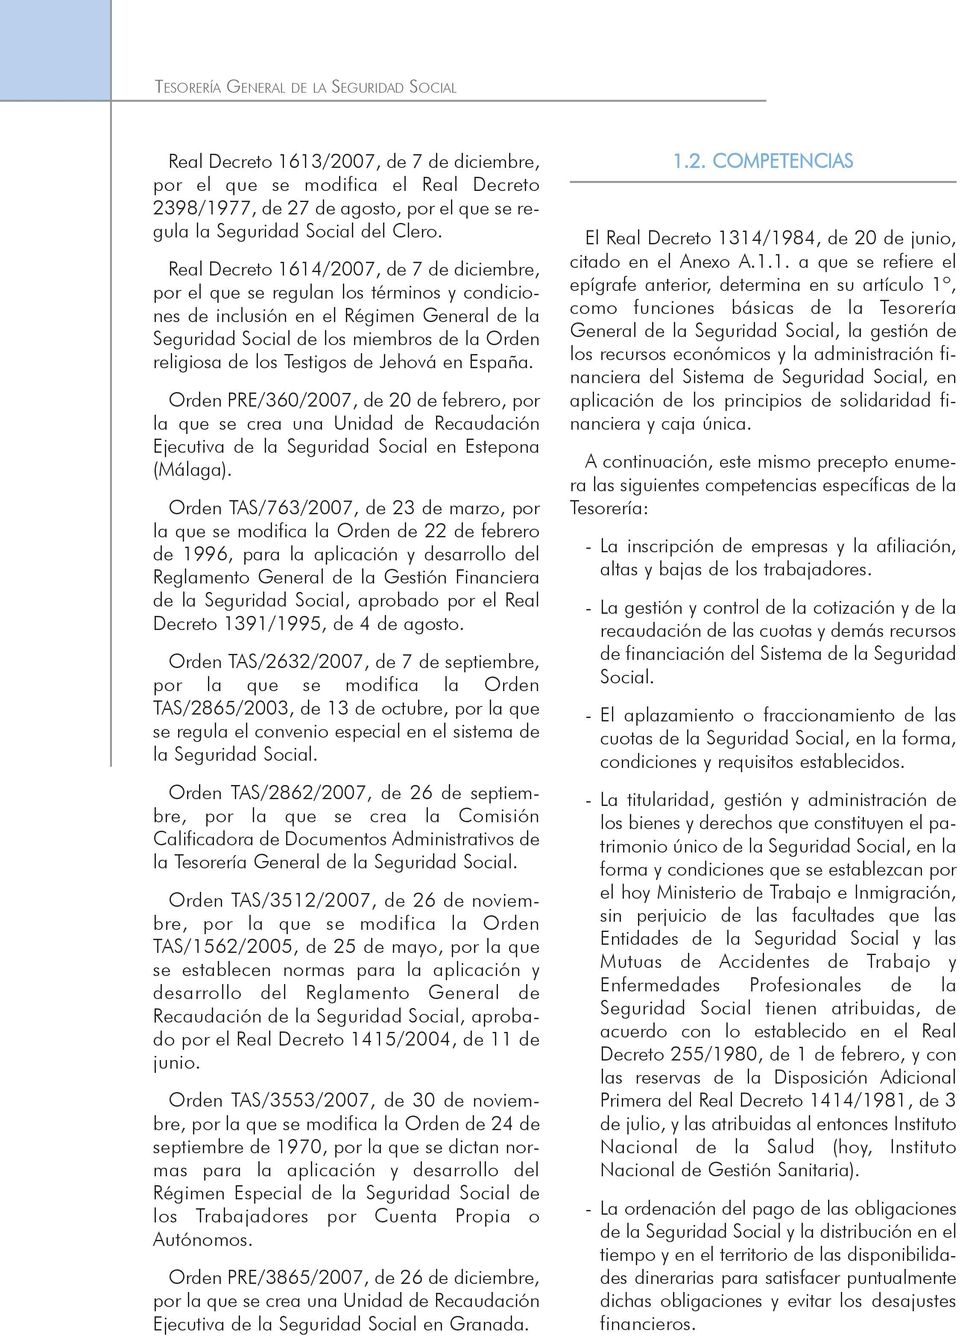 Real Decreto 1614/2007, de 7 de diciembre, por el que se regulan los términos y condiciones de inclusión en el Régimen General de la Seguridad Social de los miembros de la Orden religiosa de los